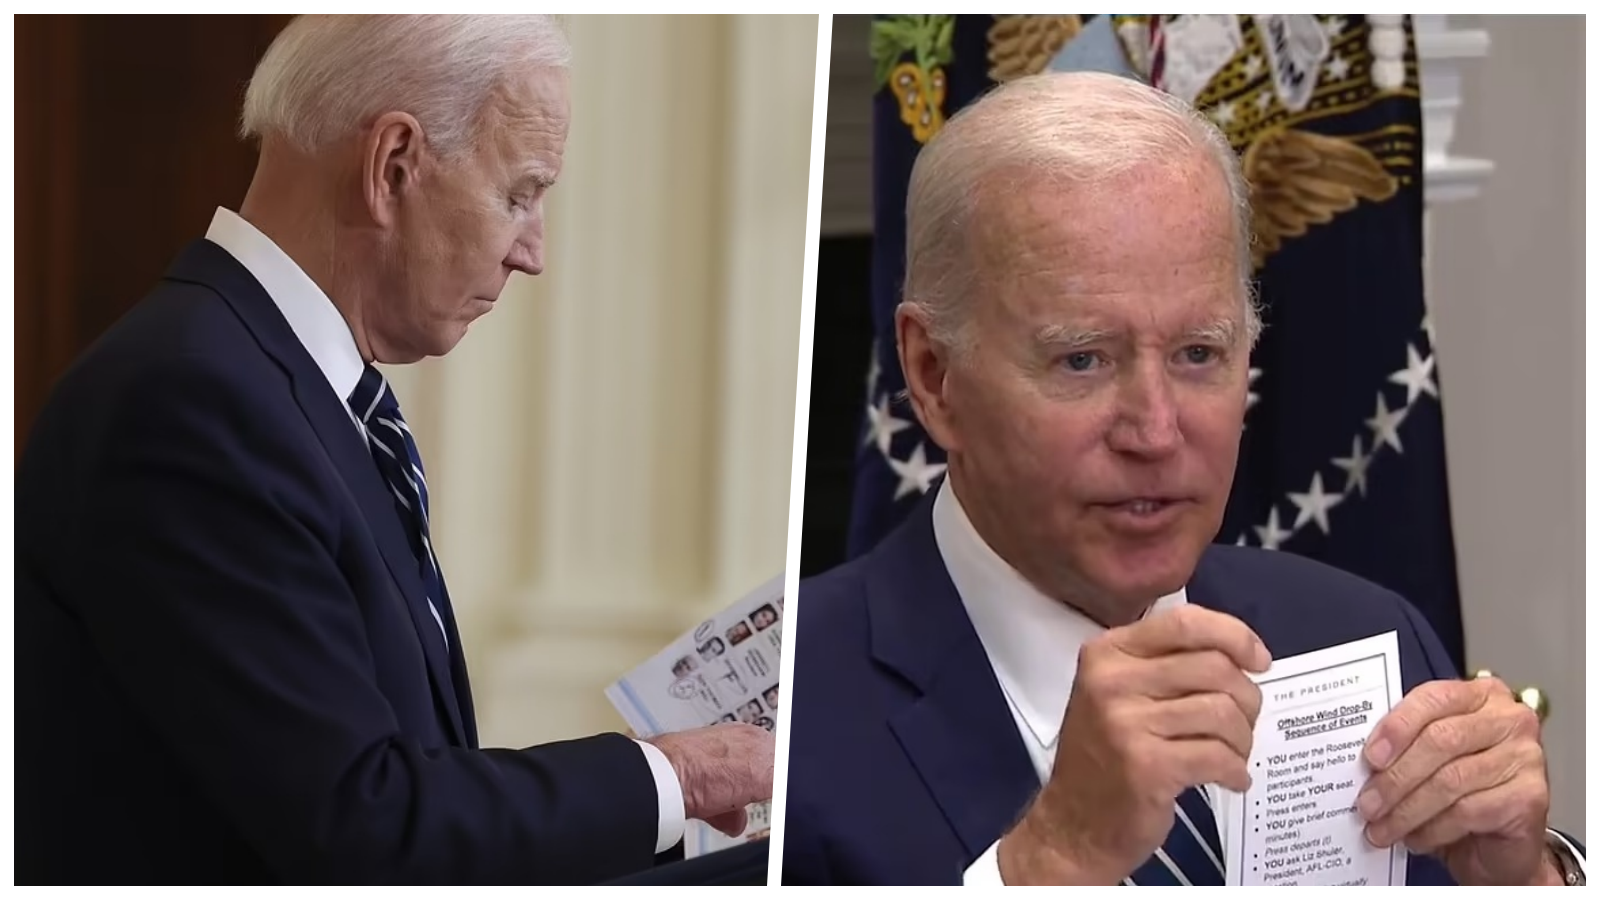 Joe Biden zbulon letrën me udhëzime, dikush i shkruan çfarë të bëjë: Ulu tek karrigia, thuaj përshëndetje!